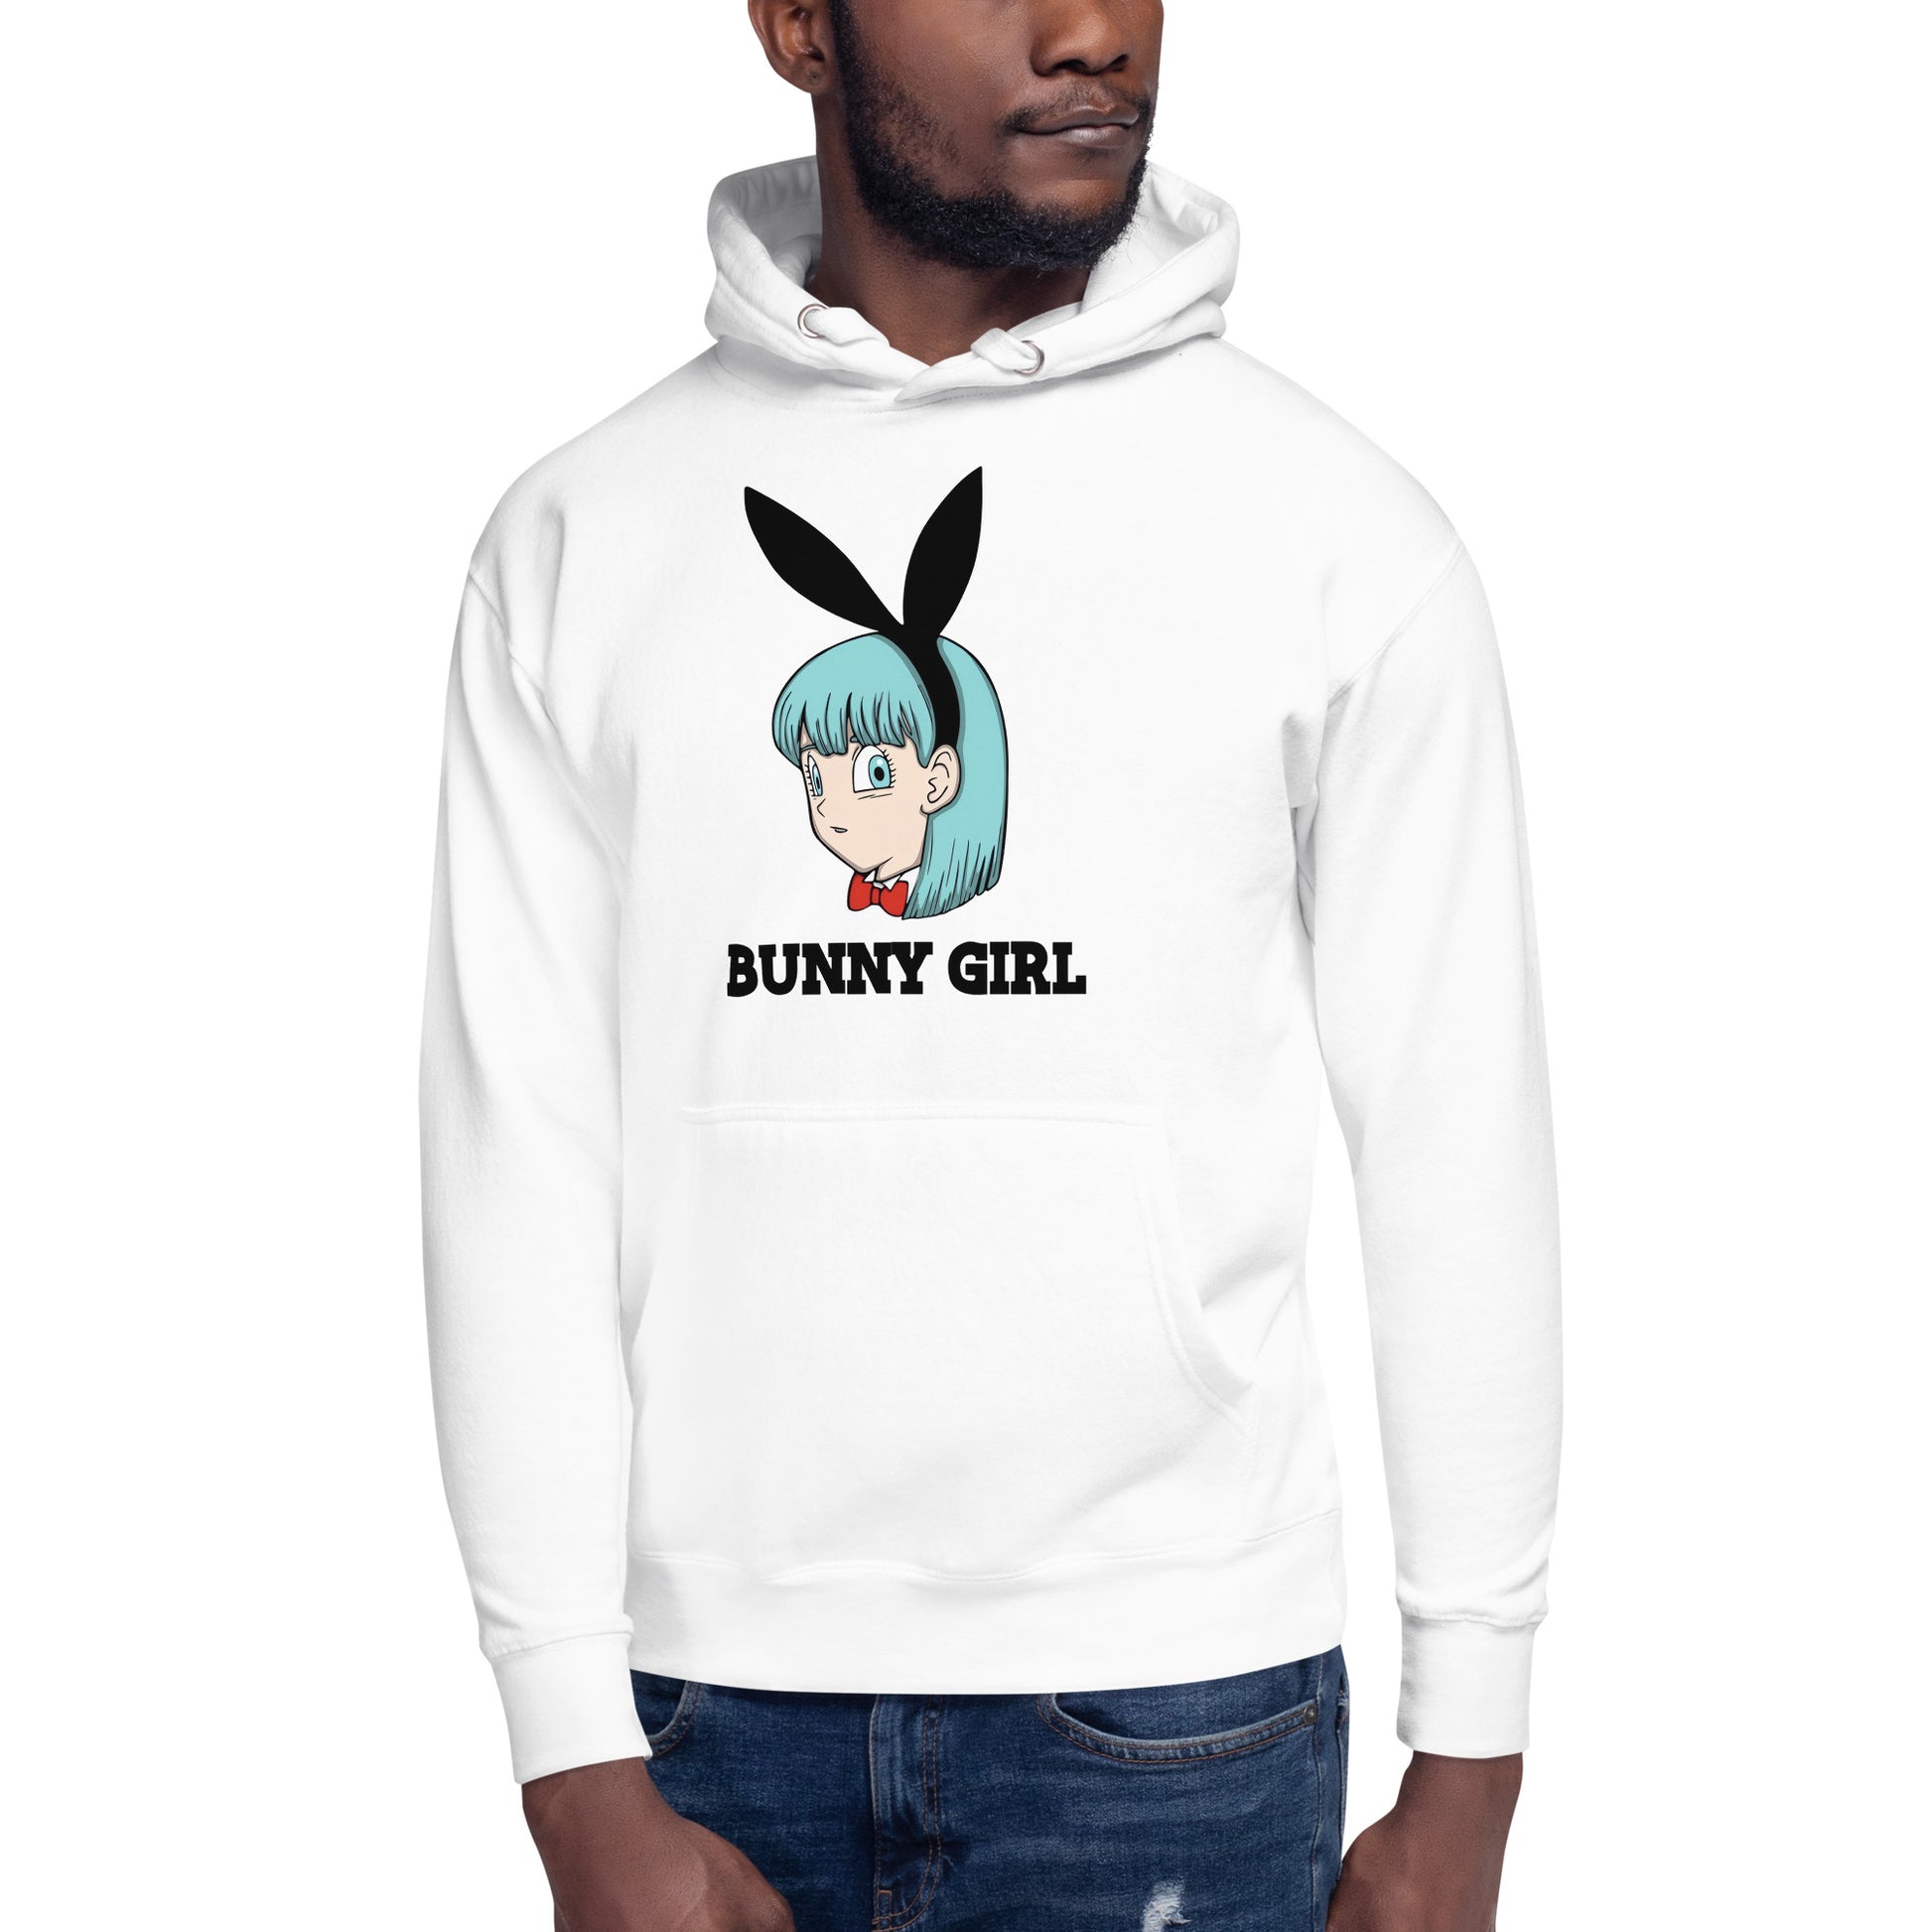 Hoodie de Bunny Girl, Disponible en la mejor tienda online para comprar tu merch favorita, la mejor Calidad, compra Ahora en Superstar!